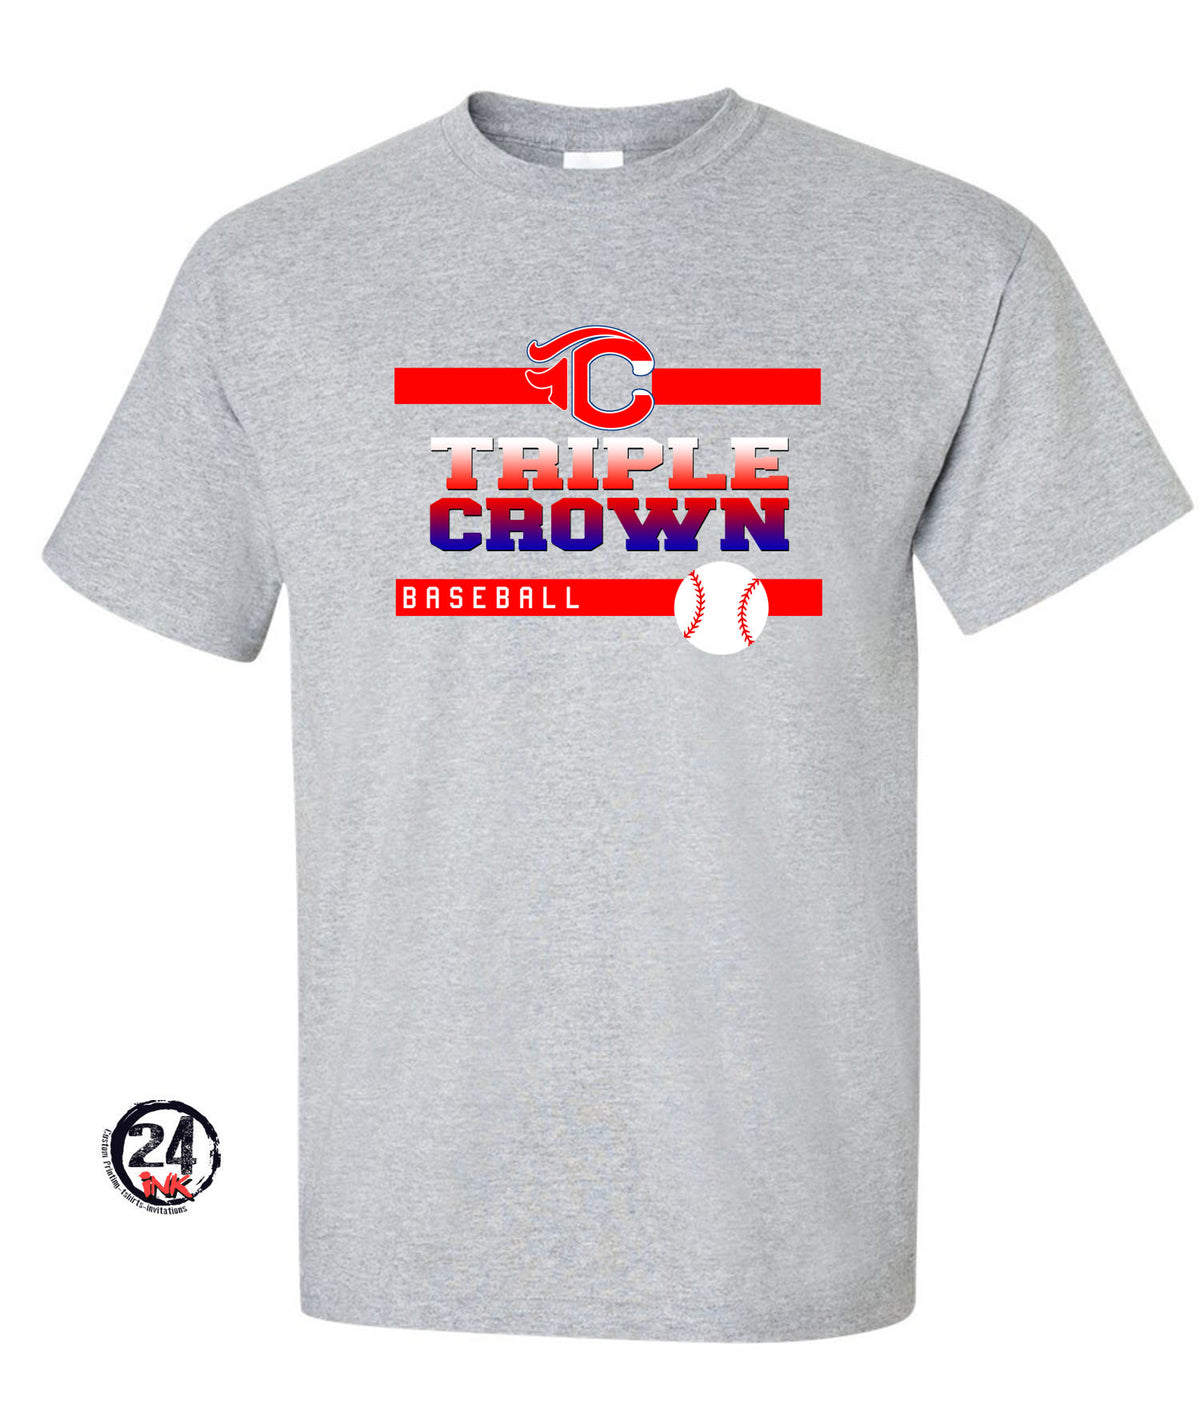 TC Triple Crown T-shirt